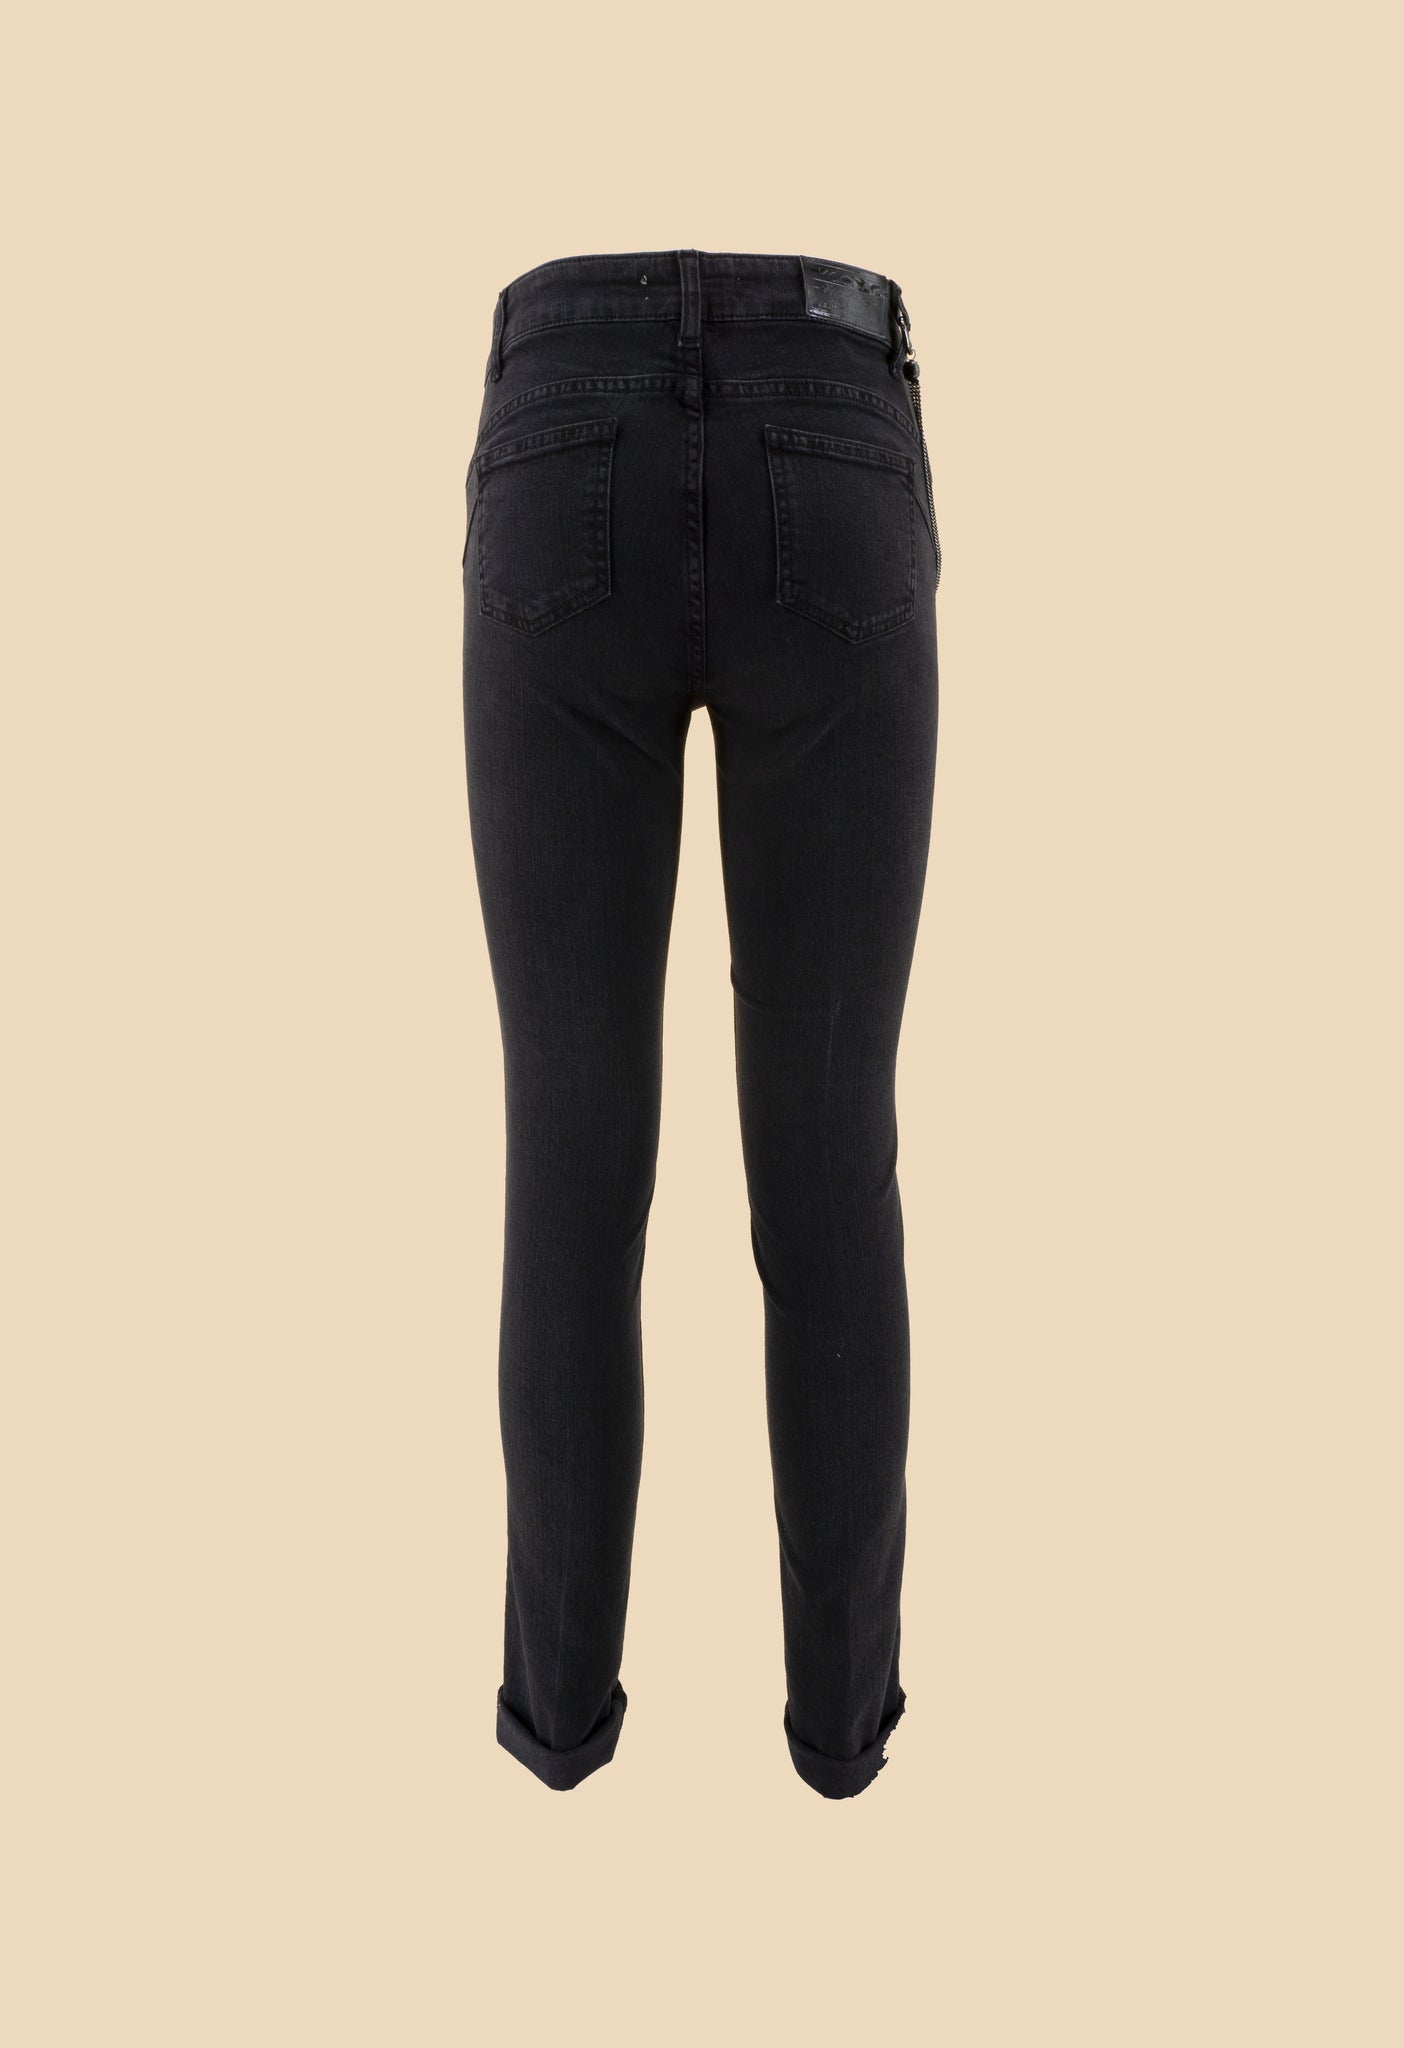 Jeans Nero con Applicazioni / Nero - Ideal Moda